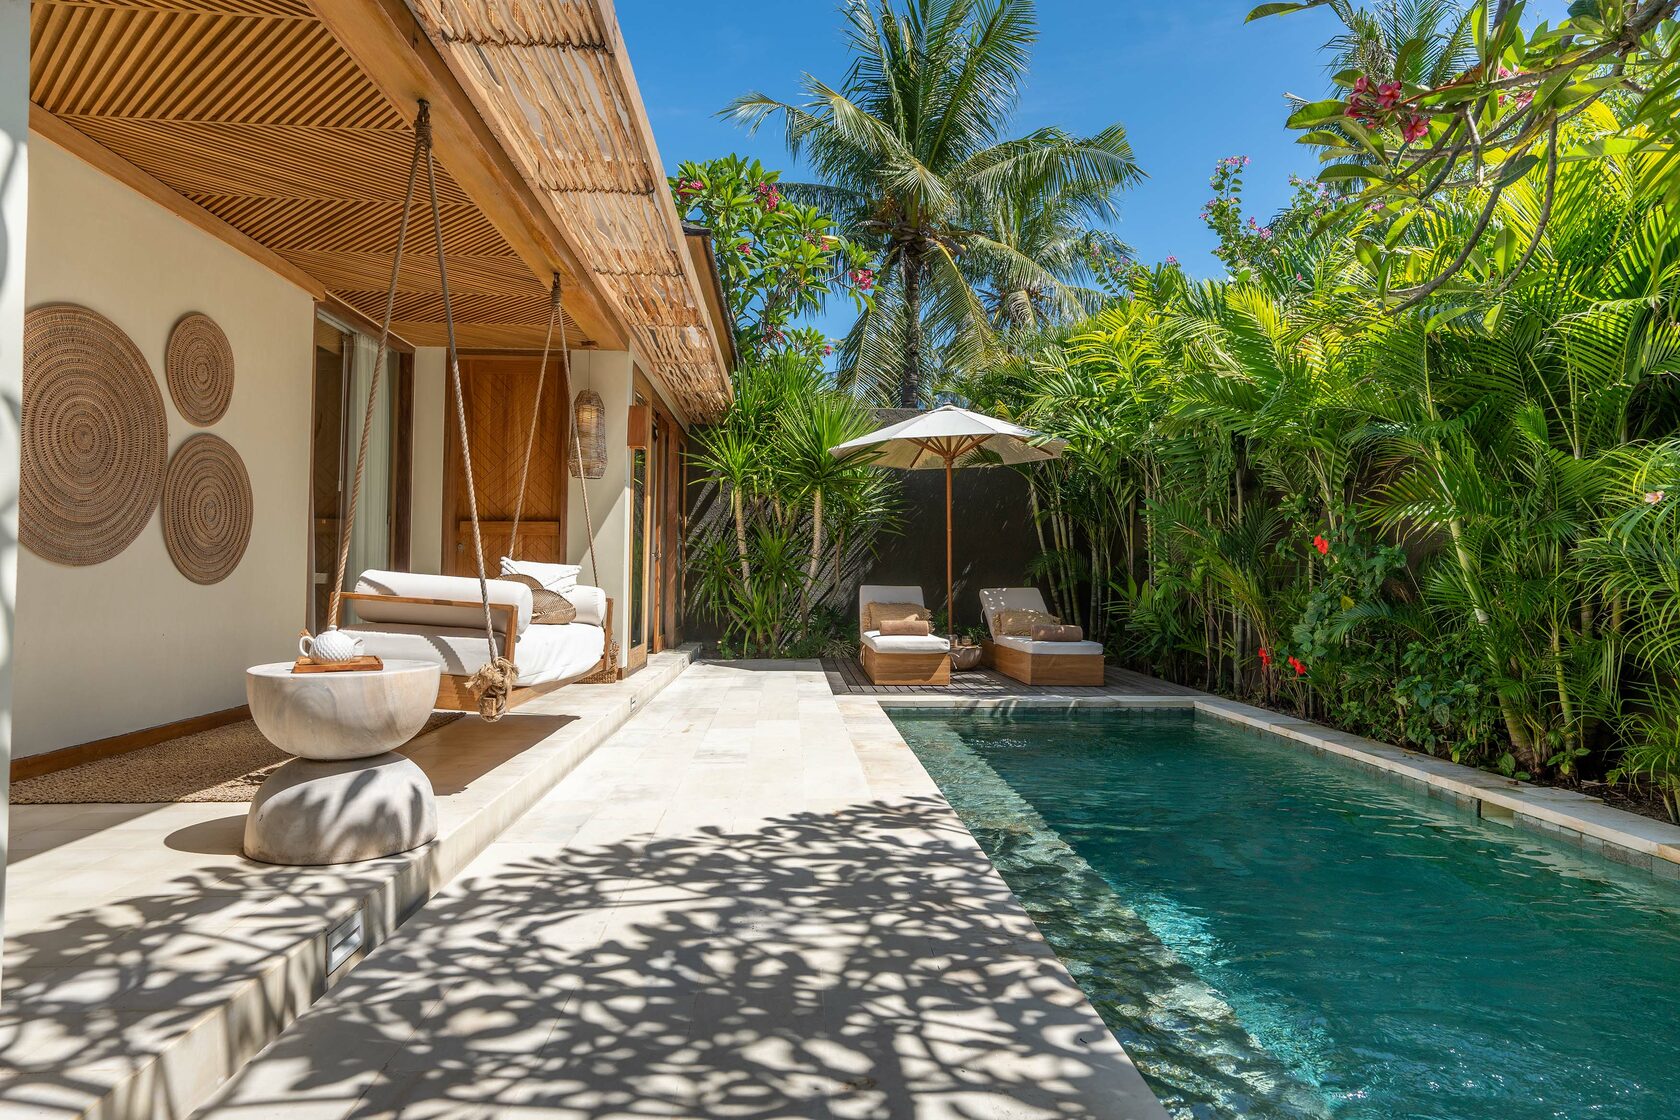 Бали недвижимость купить цена. Недвижимость на Бали. Остров Бали земельные участки. Недвижимость Бали самые красивые картинки без авторских прав.